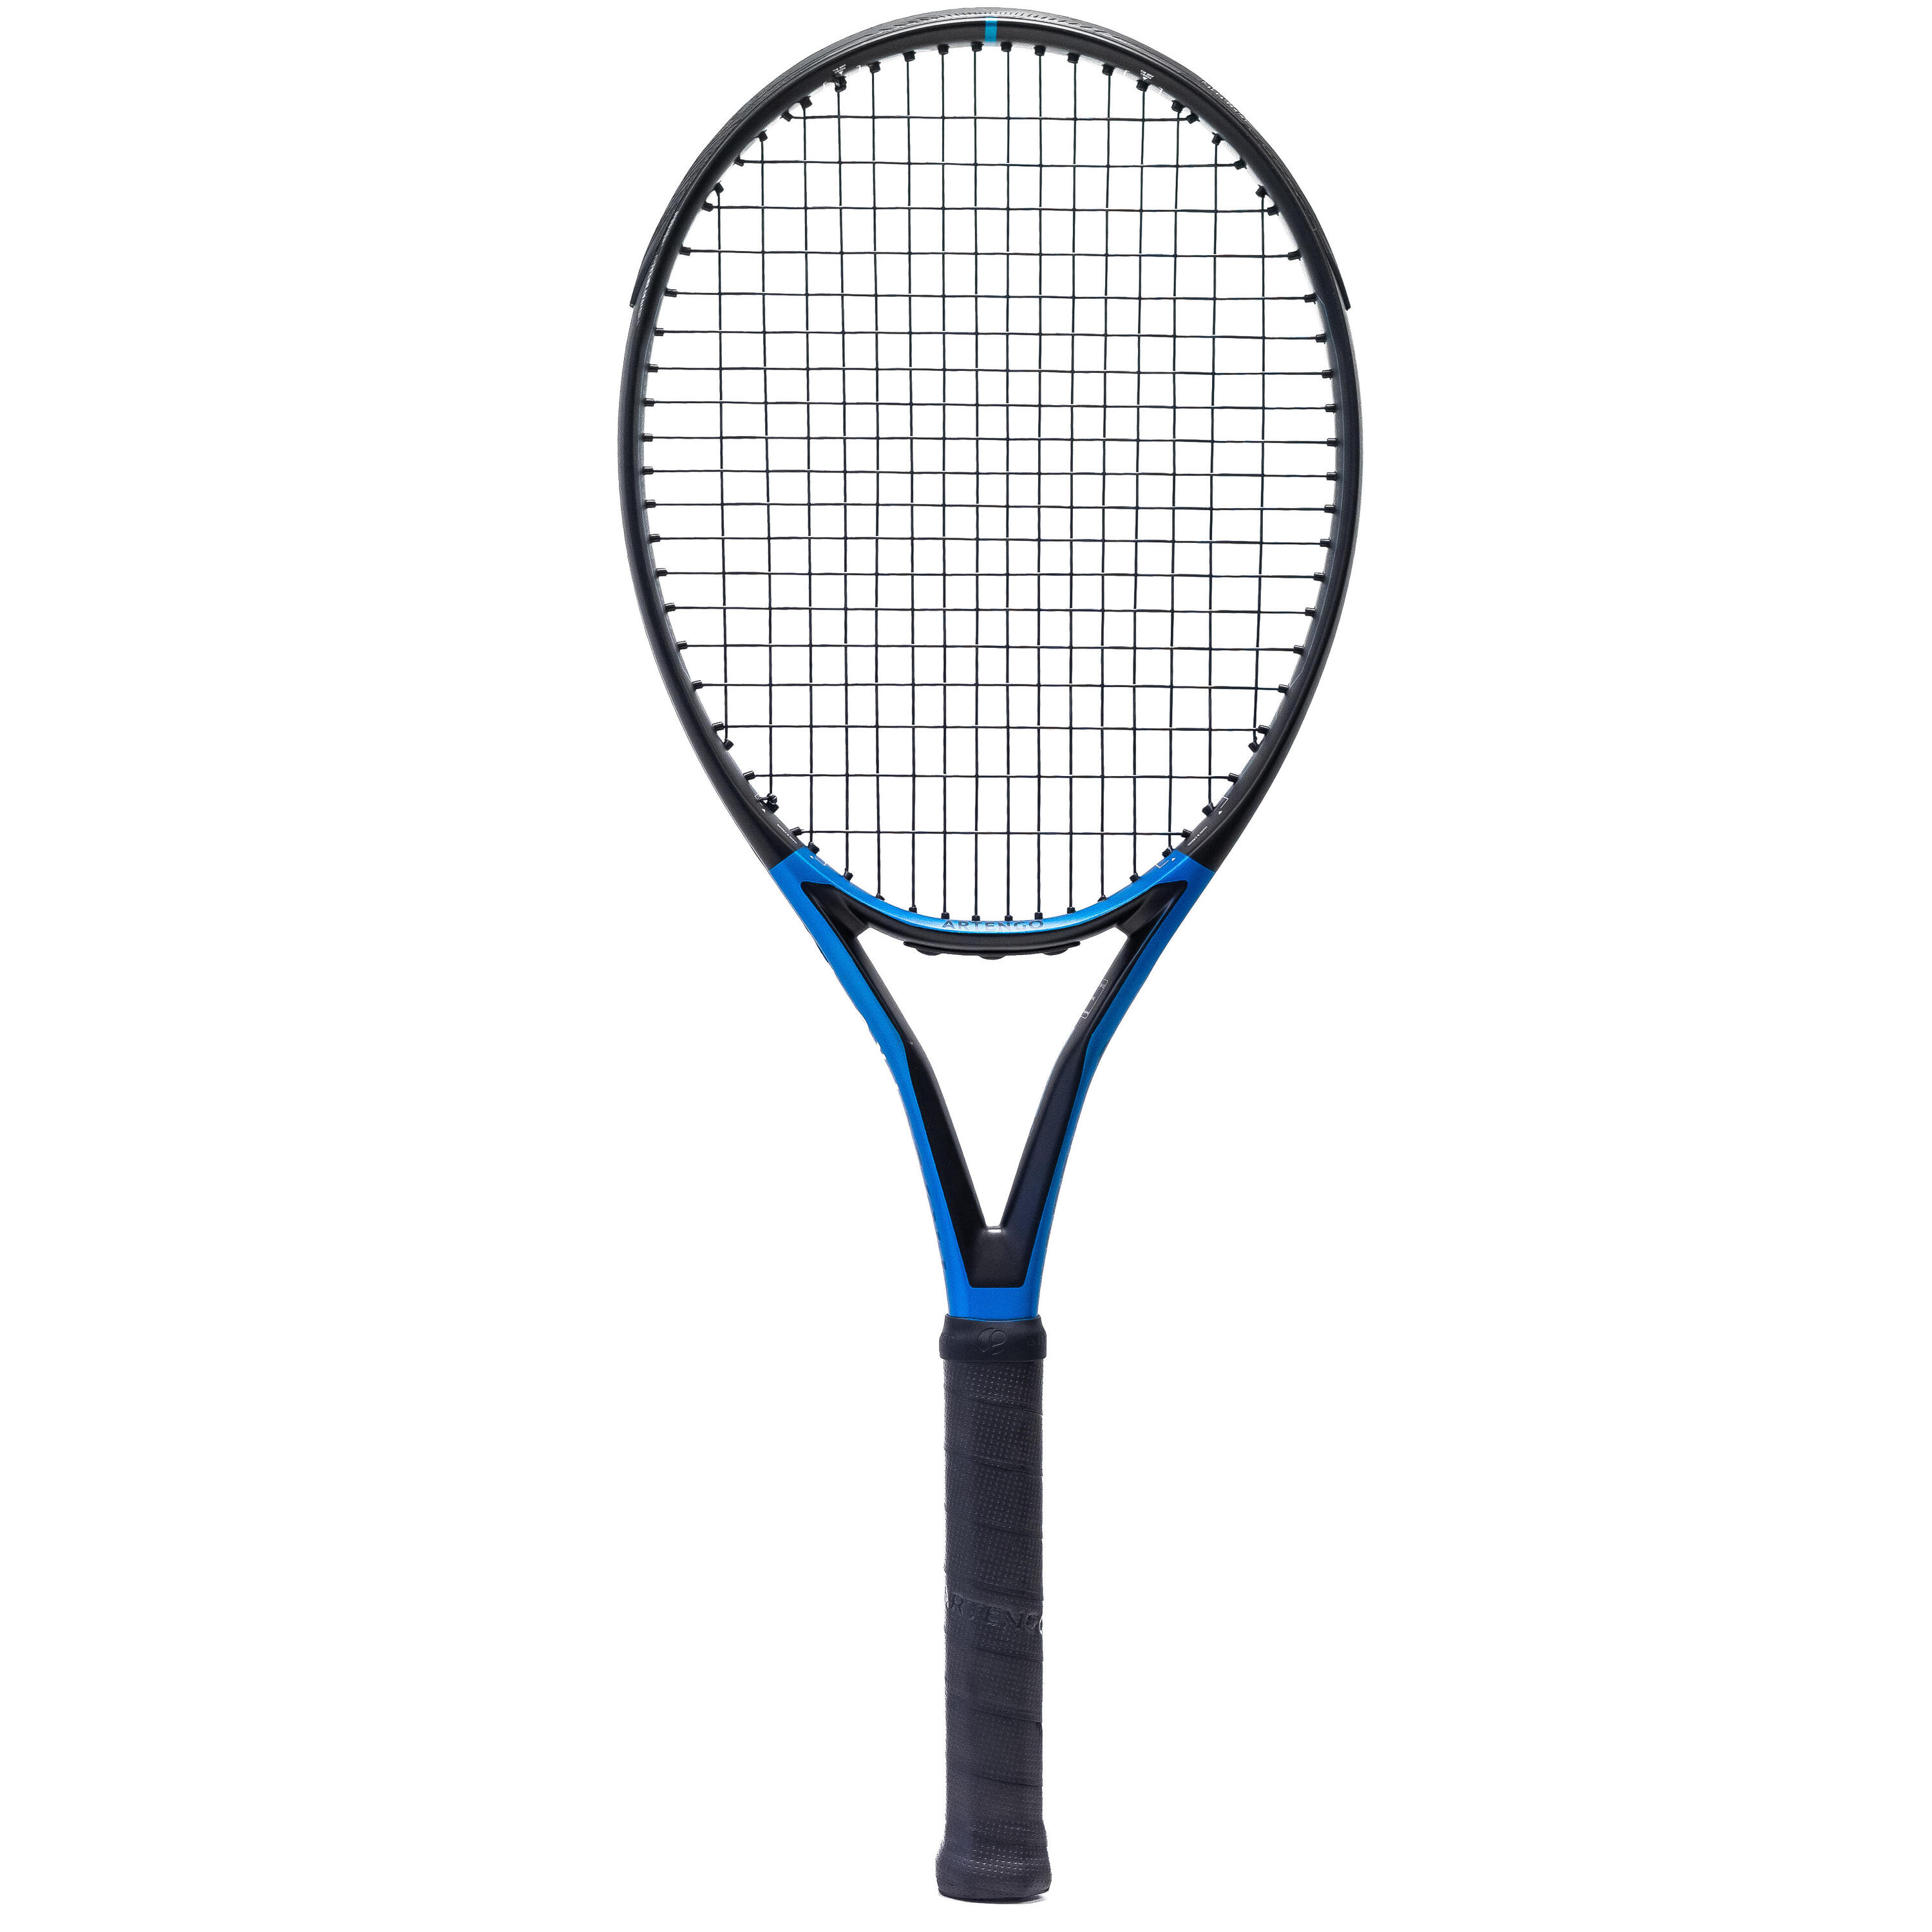 Теннисная ракетка - TR930 Spin Lite, черная/синяя ARTENGO, черный/лазурно-синий